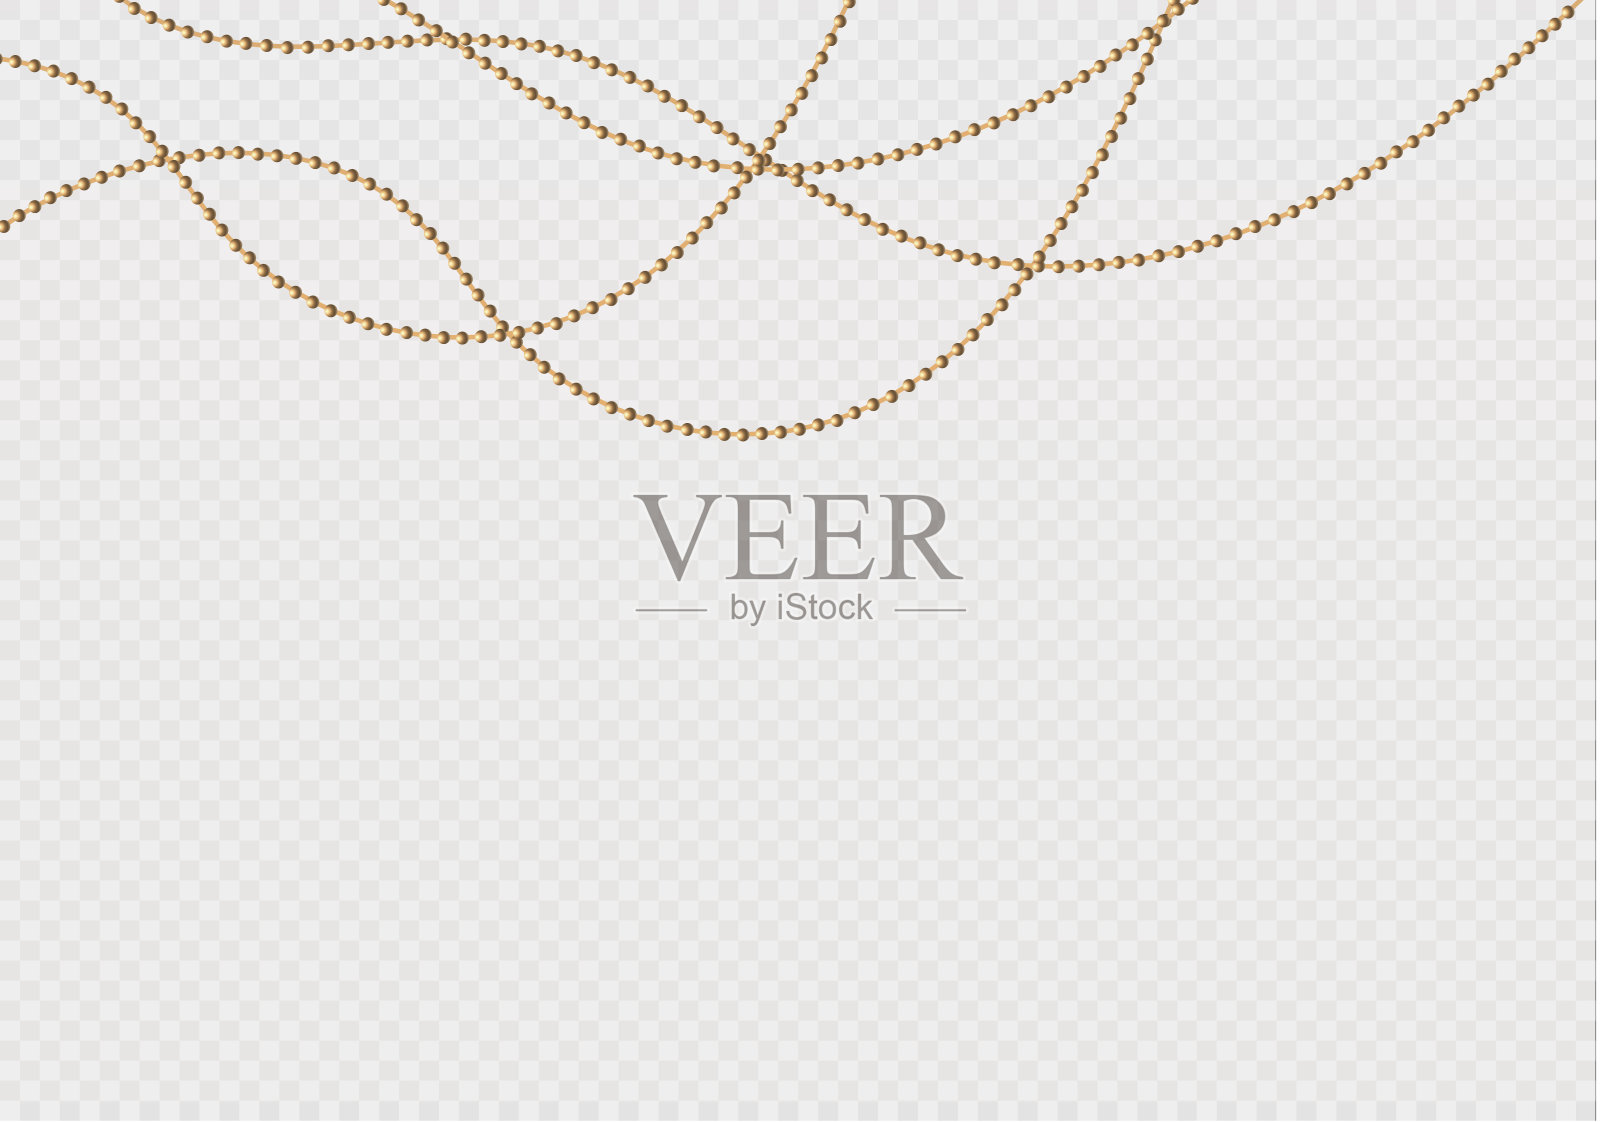 一条美丽的金色链条。串珠是真实绝缘的。金珠设计的装饰元素。矢量图插画图片素材